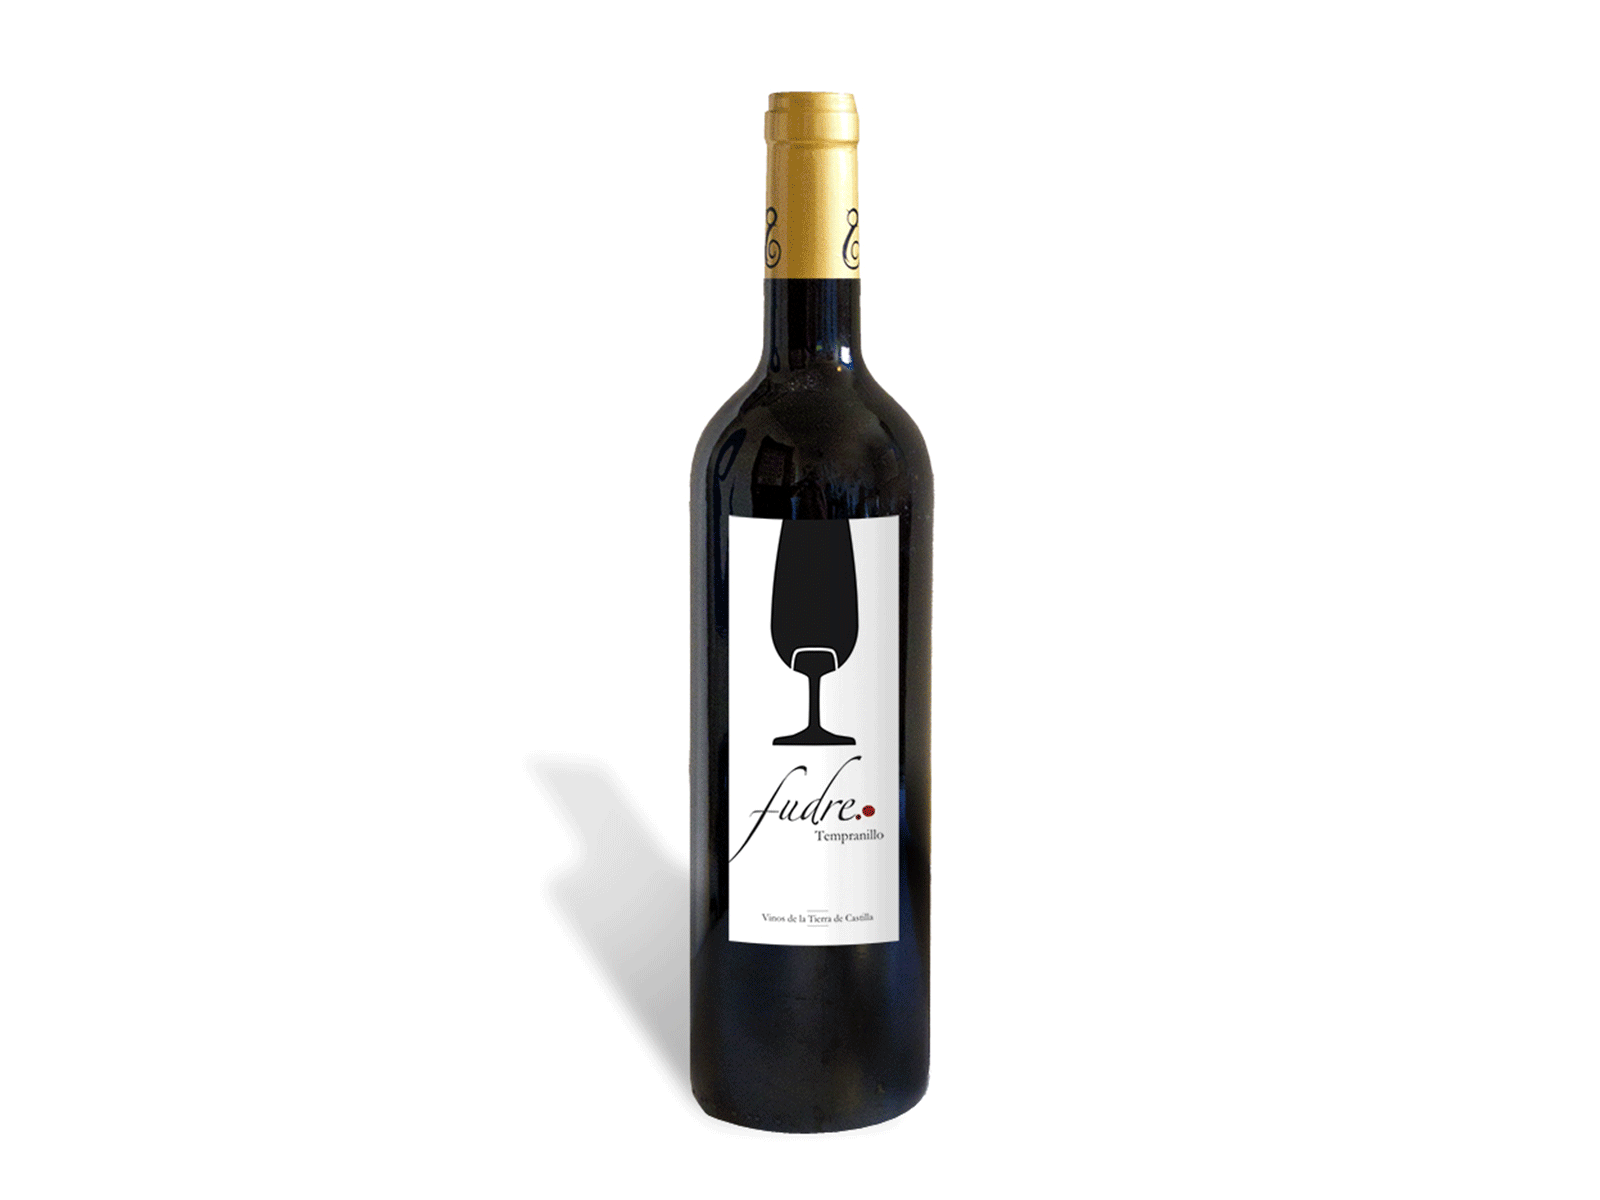 Fudre branding diseño gráfico etiqueta graphic design label rail railroad vino wine